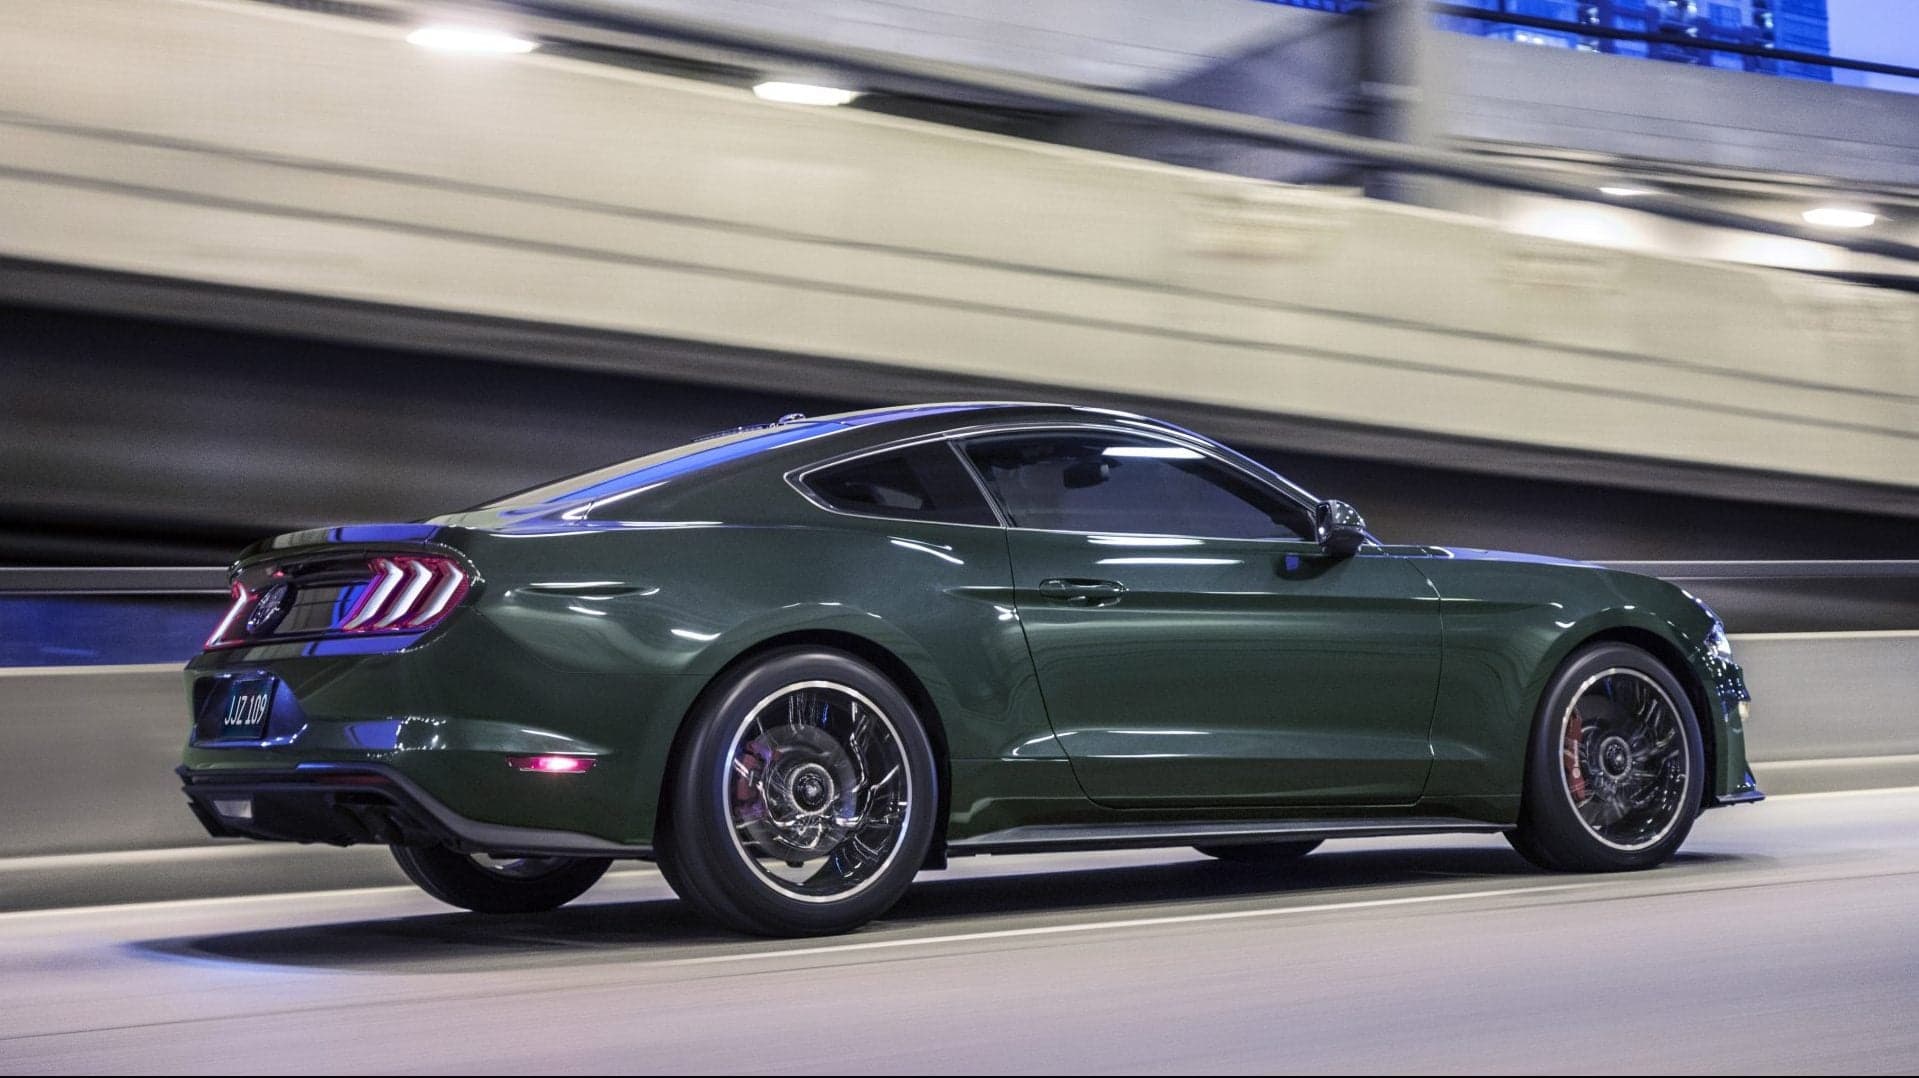 Ford Dealers Now Taking Orders for 480-HP Bullitt Mustang